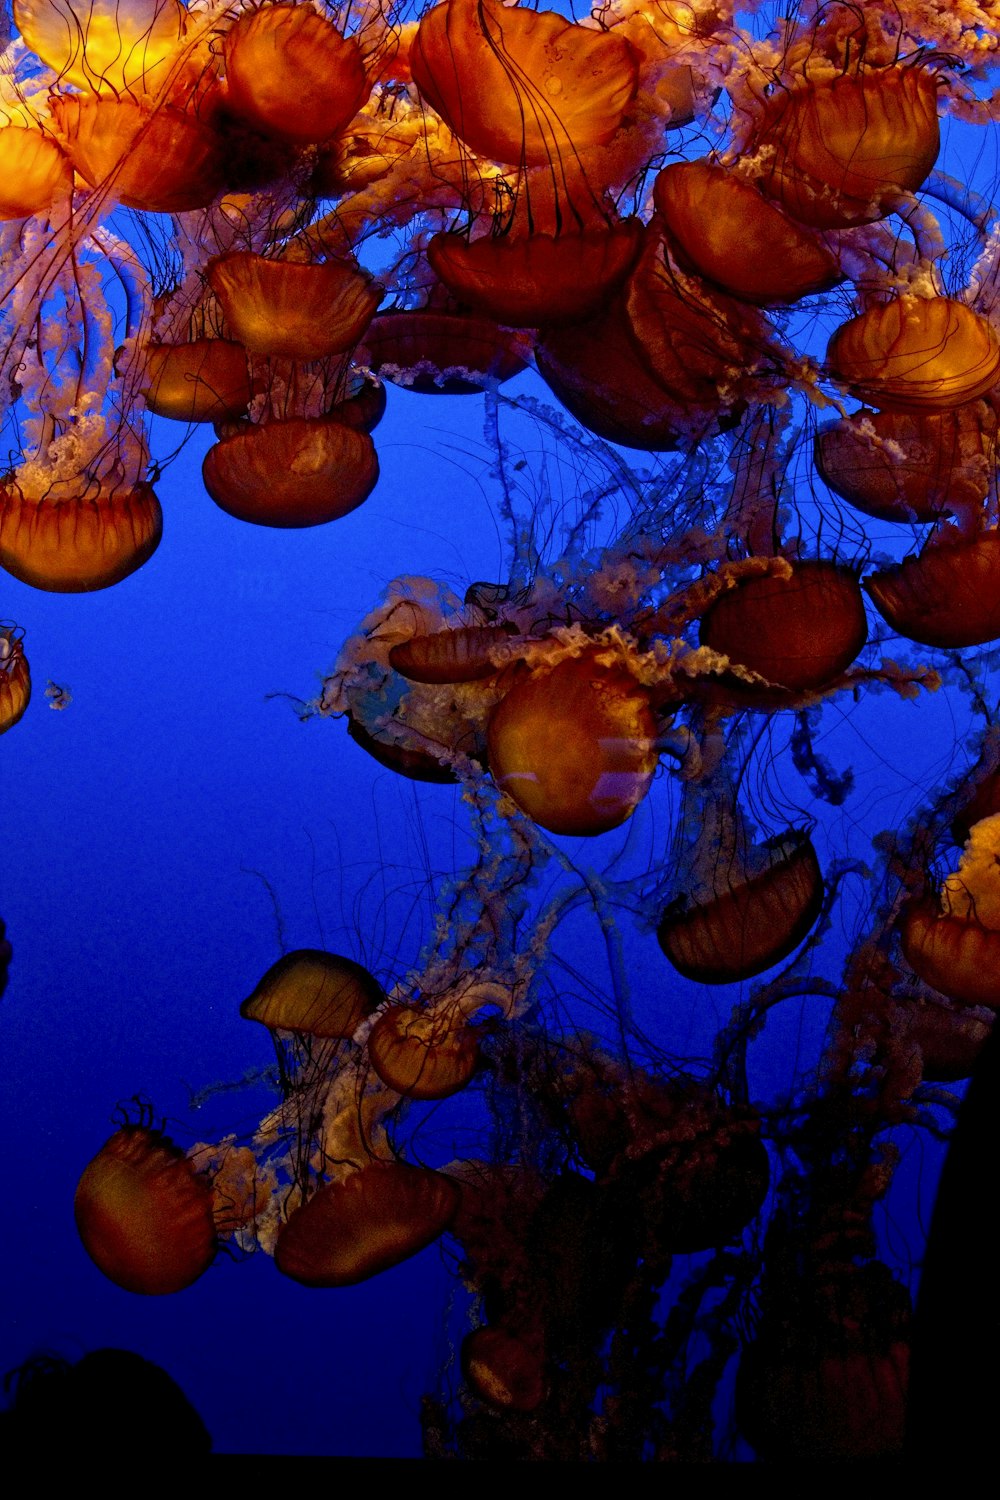 brown jellyfish under water during daytime